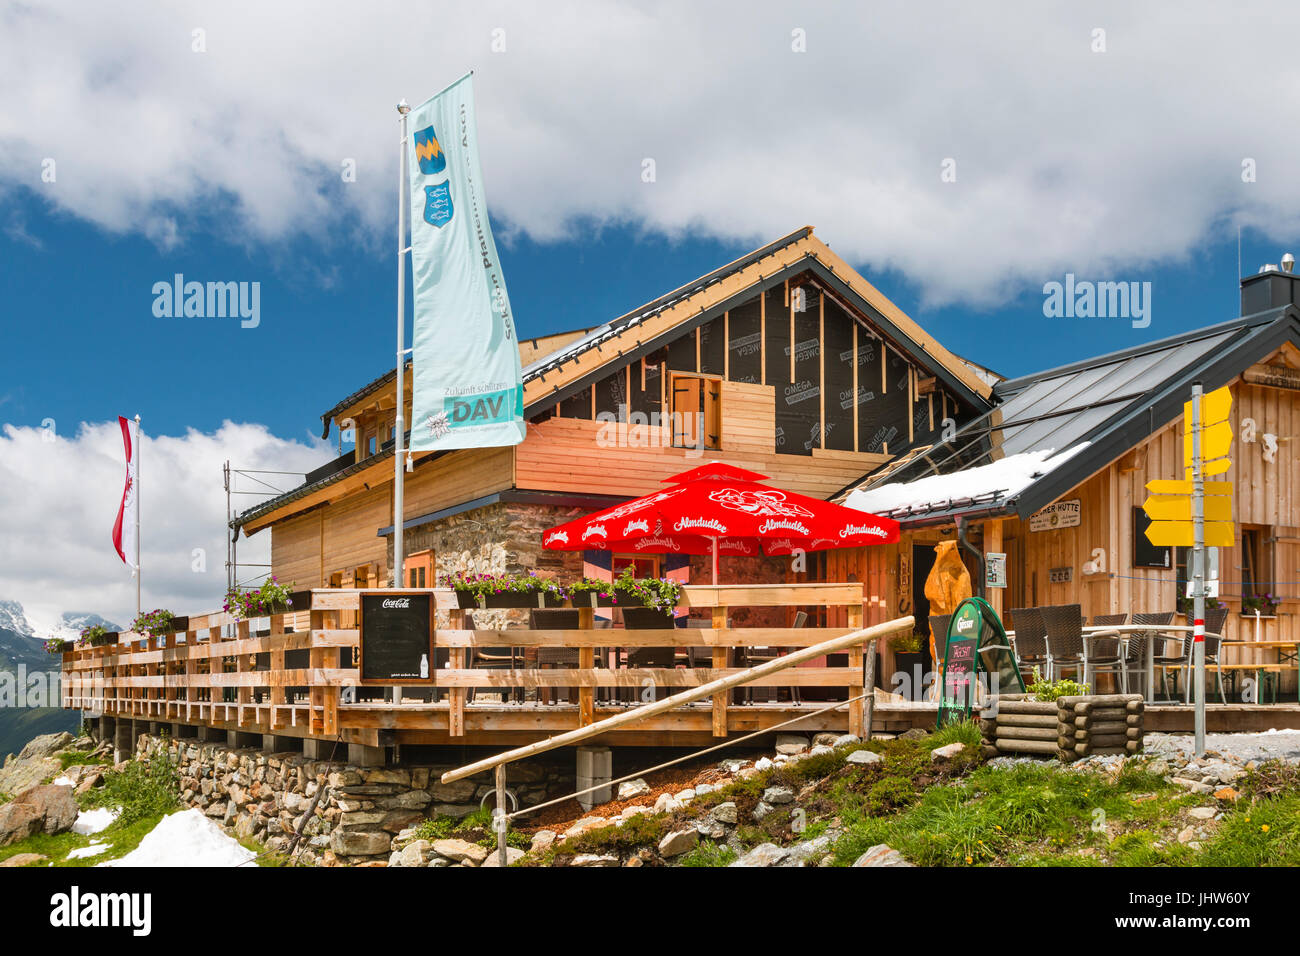 SIEHE - 16 Juli: Die erneuerte Ascher Hütte in der Nähe von See im Paznaun Tal, Österreich am 16. Juli 2016. Stockfoto